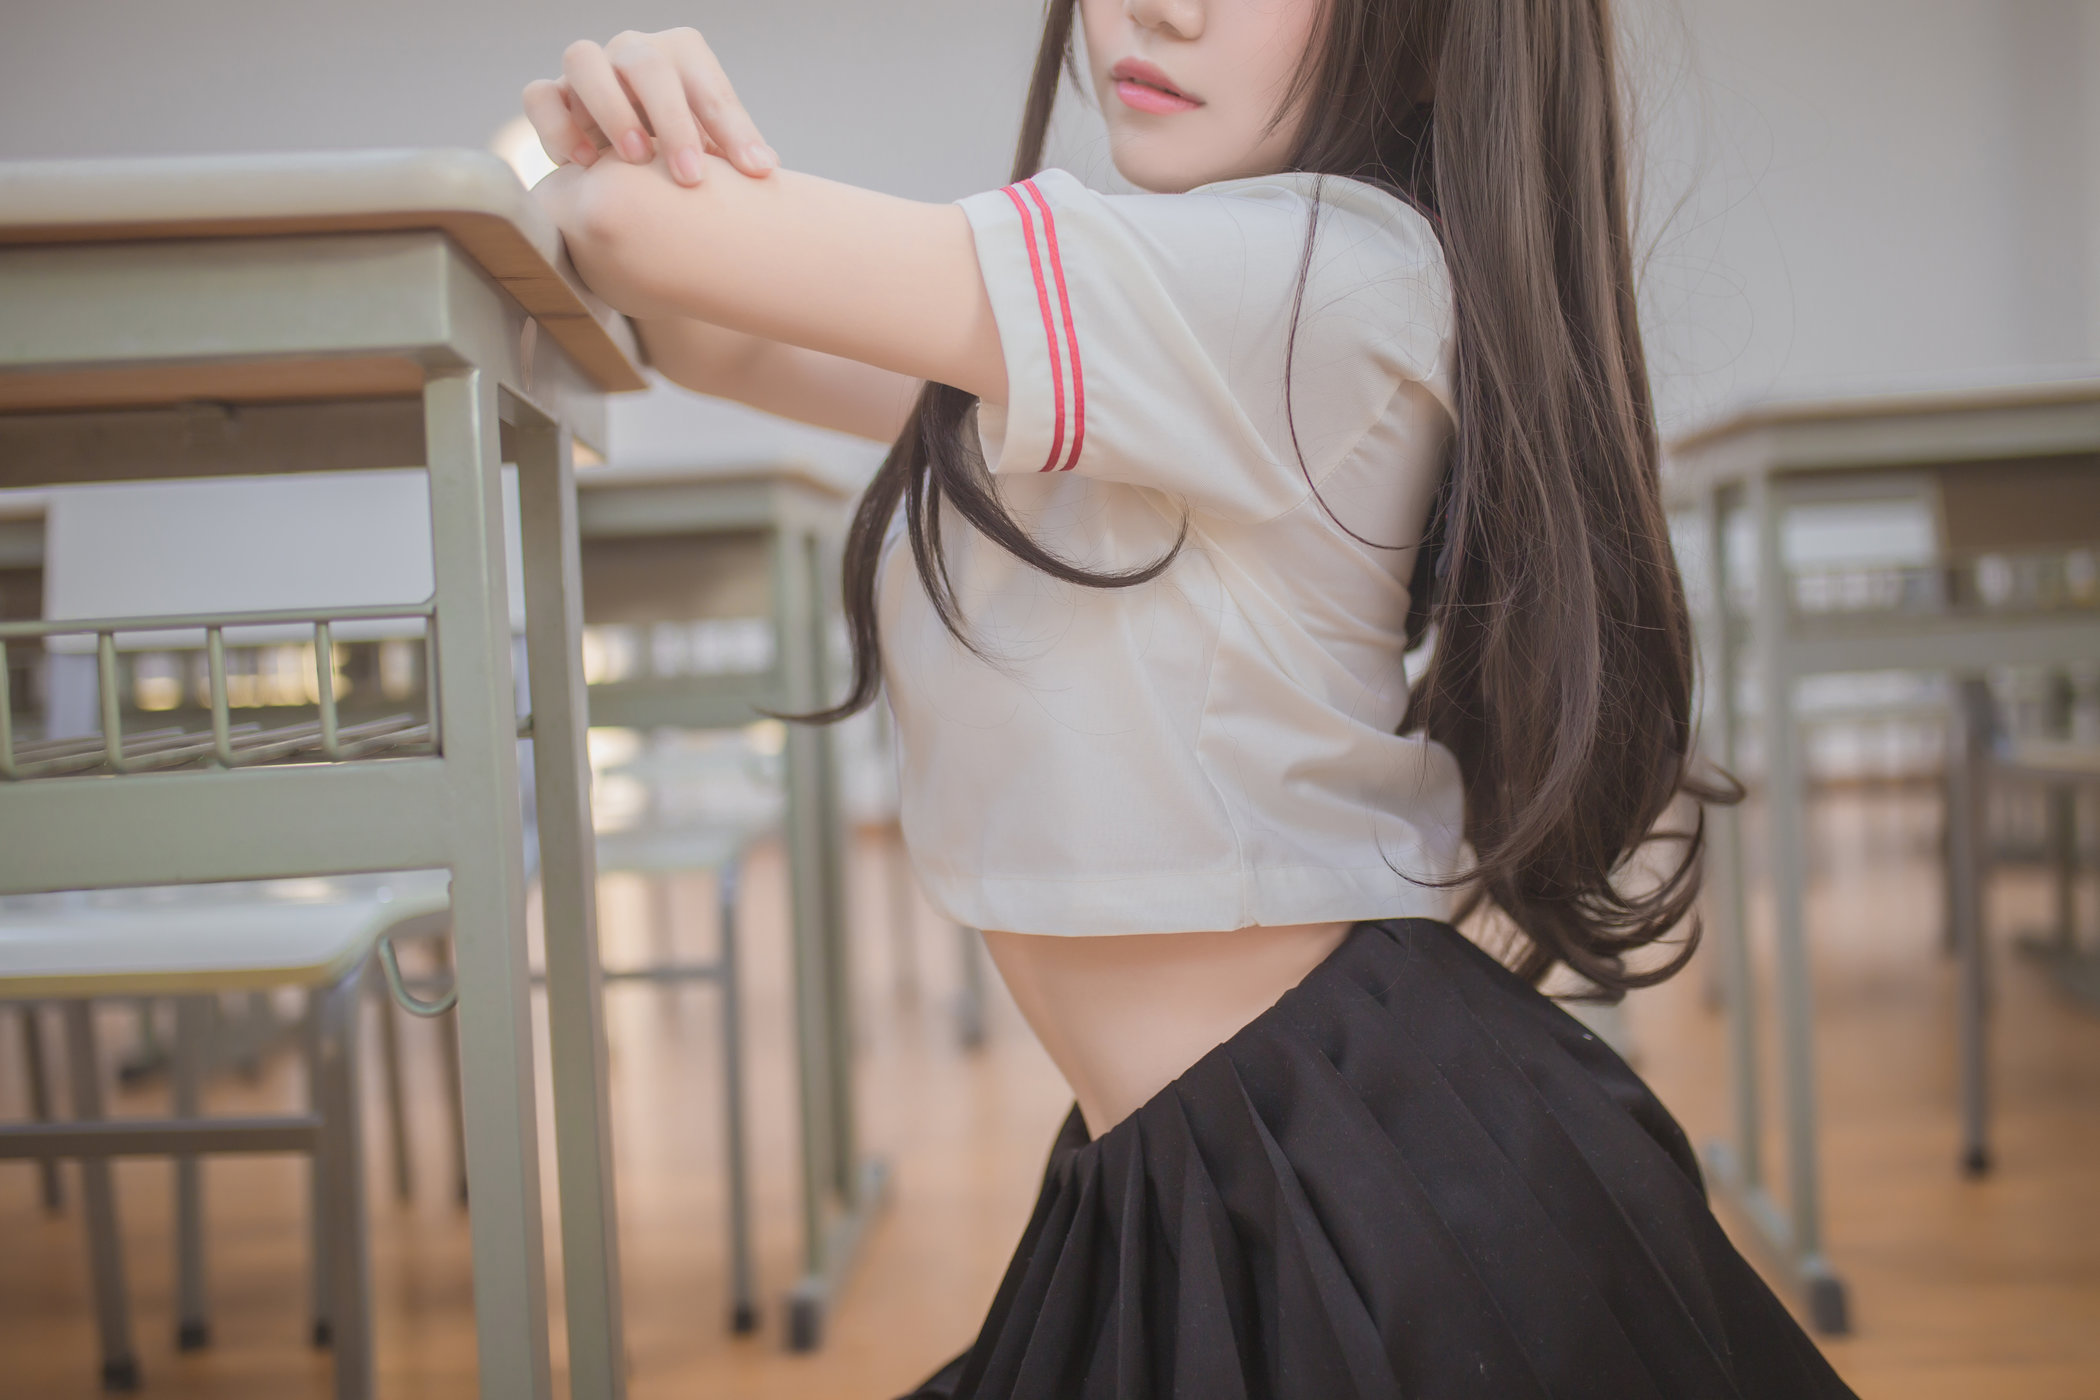 黑丝JK系列清纯学妹Yoko宅夏童颜巨乳教室脱衣